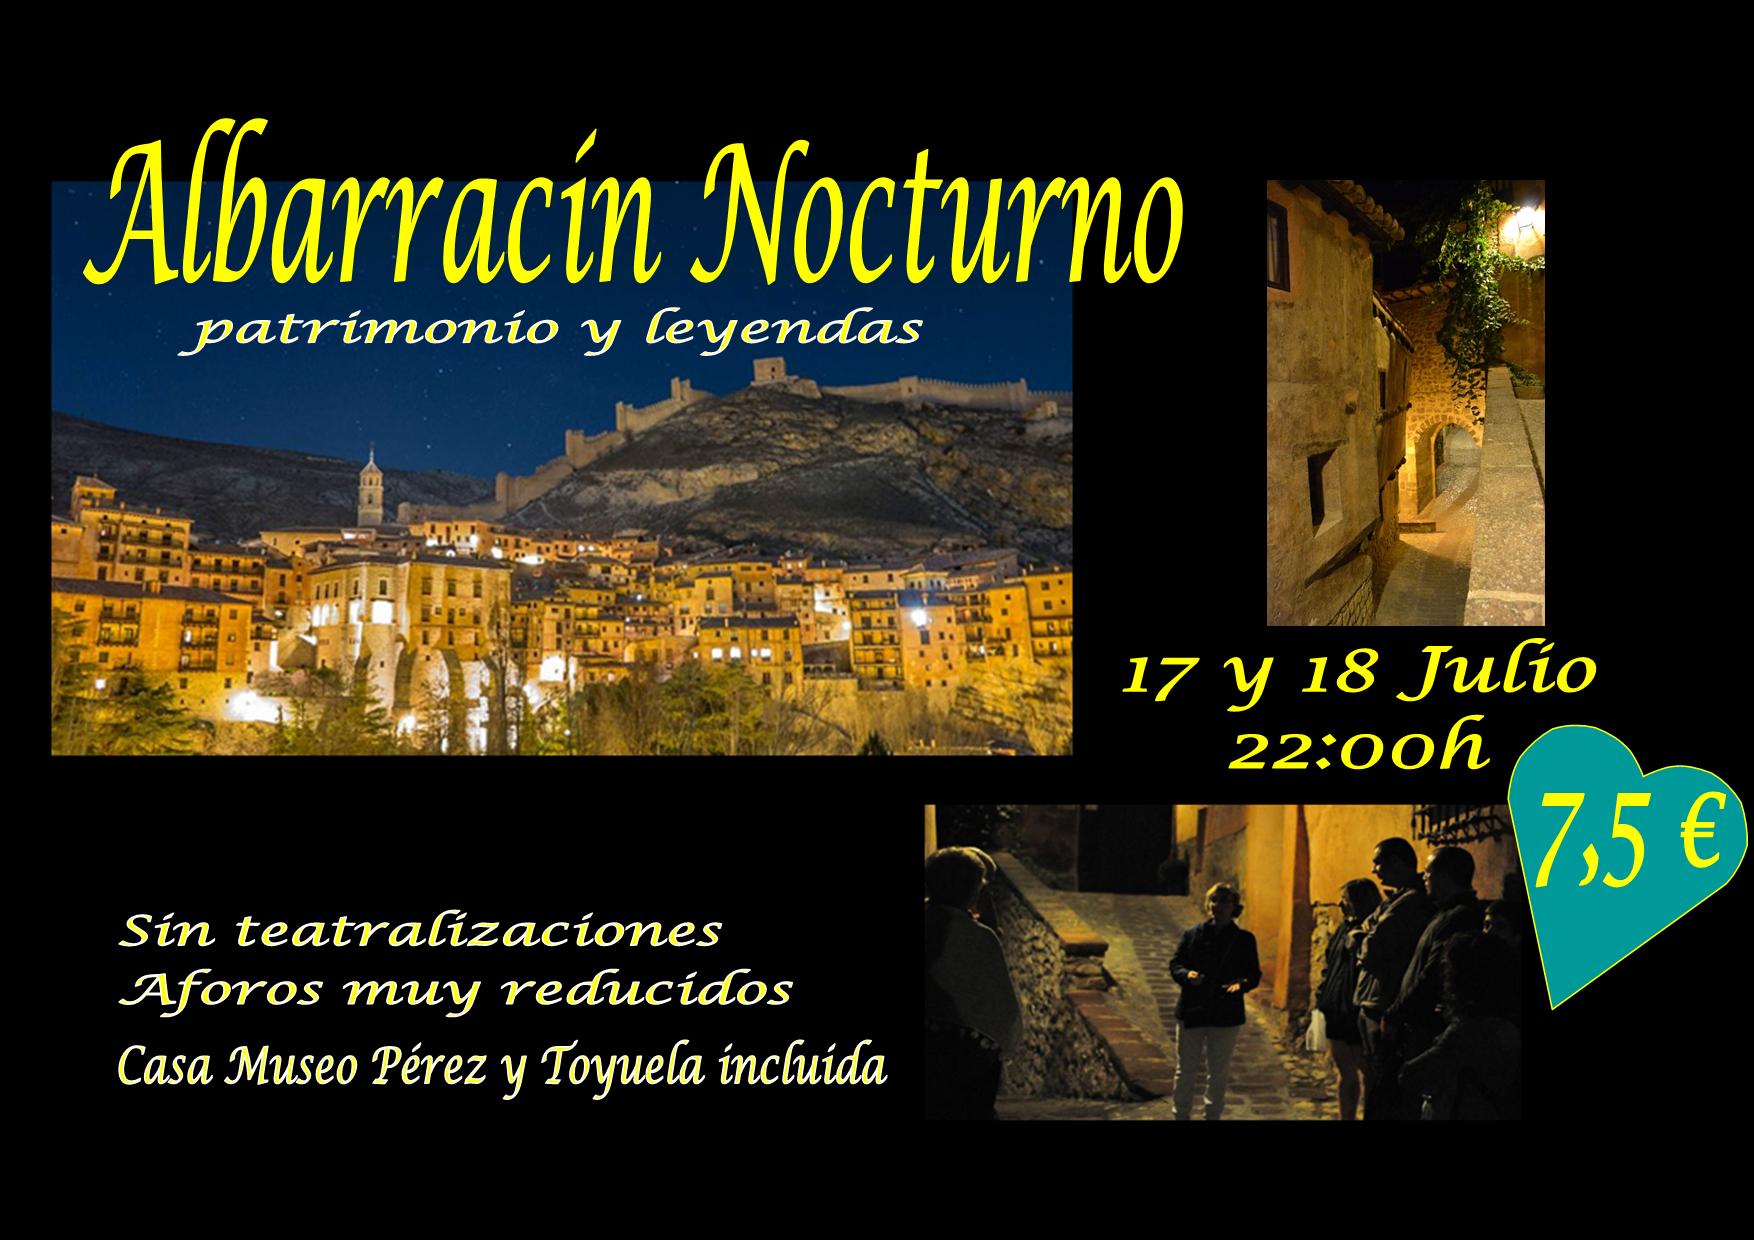 Albarracín Nocturno el 17 y 18 de Julio! Sin teatralizaciones y con Casa Museo Incluida!